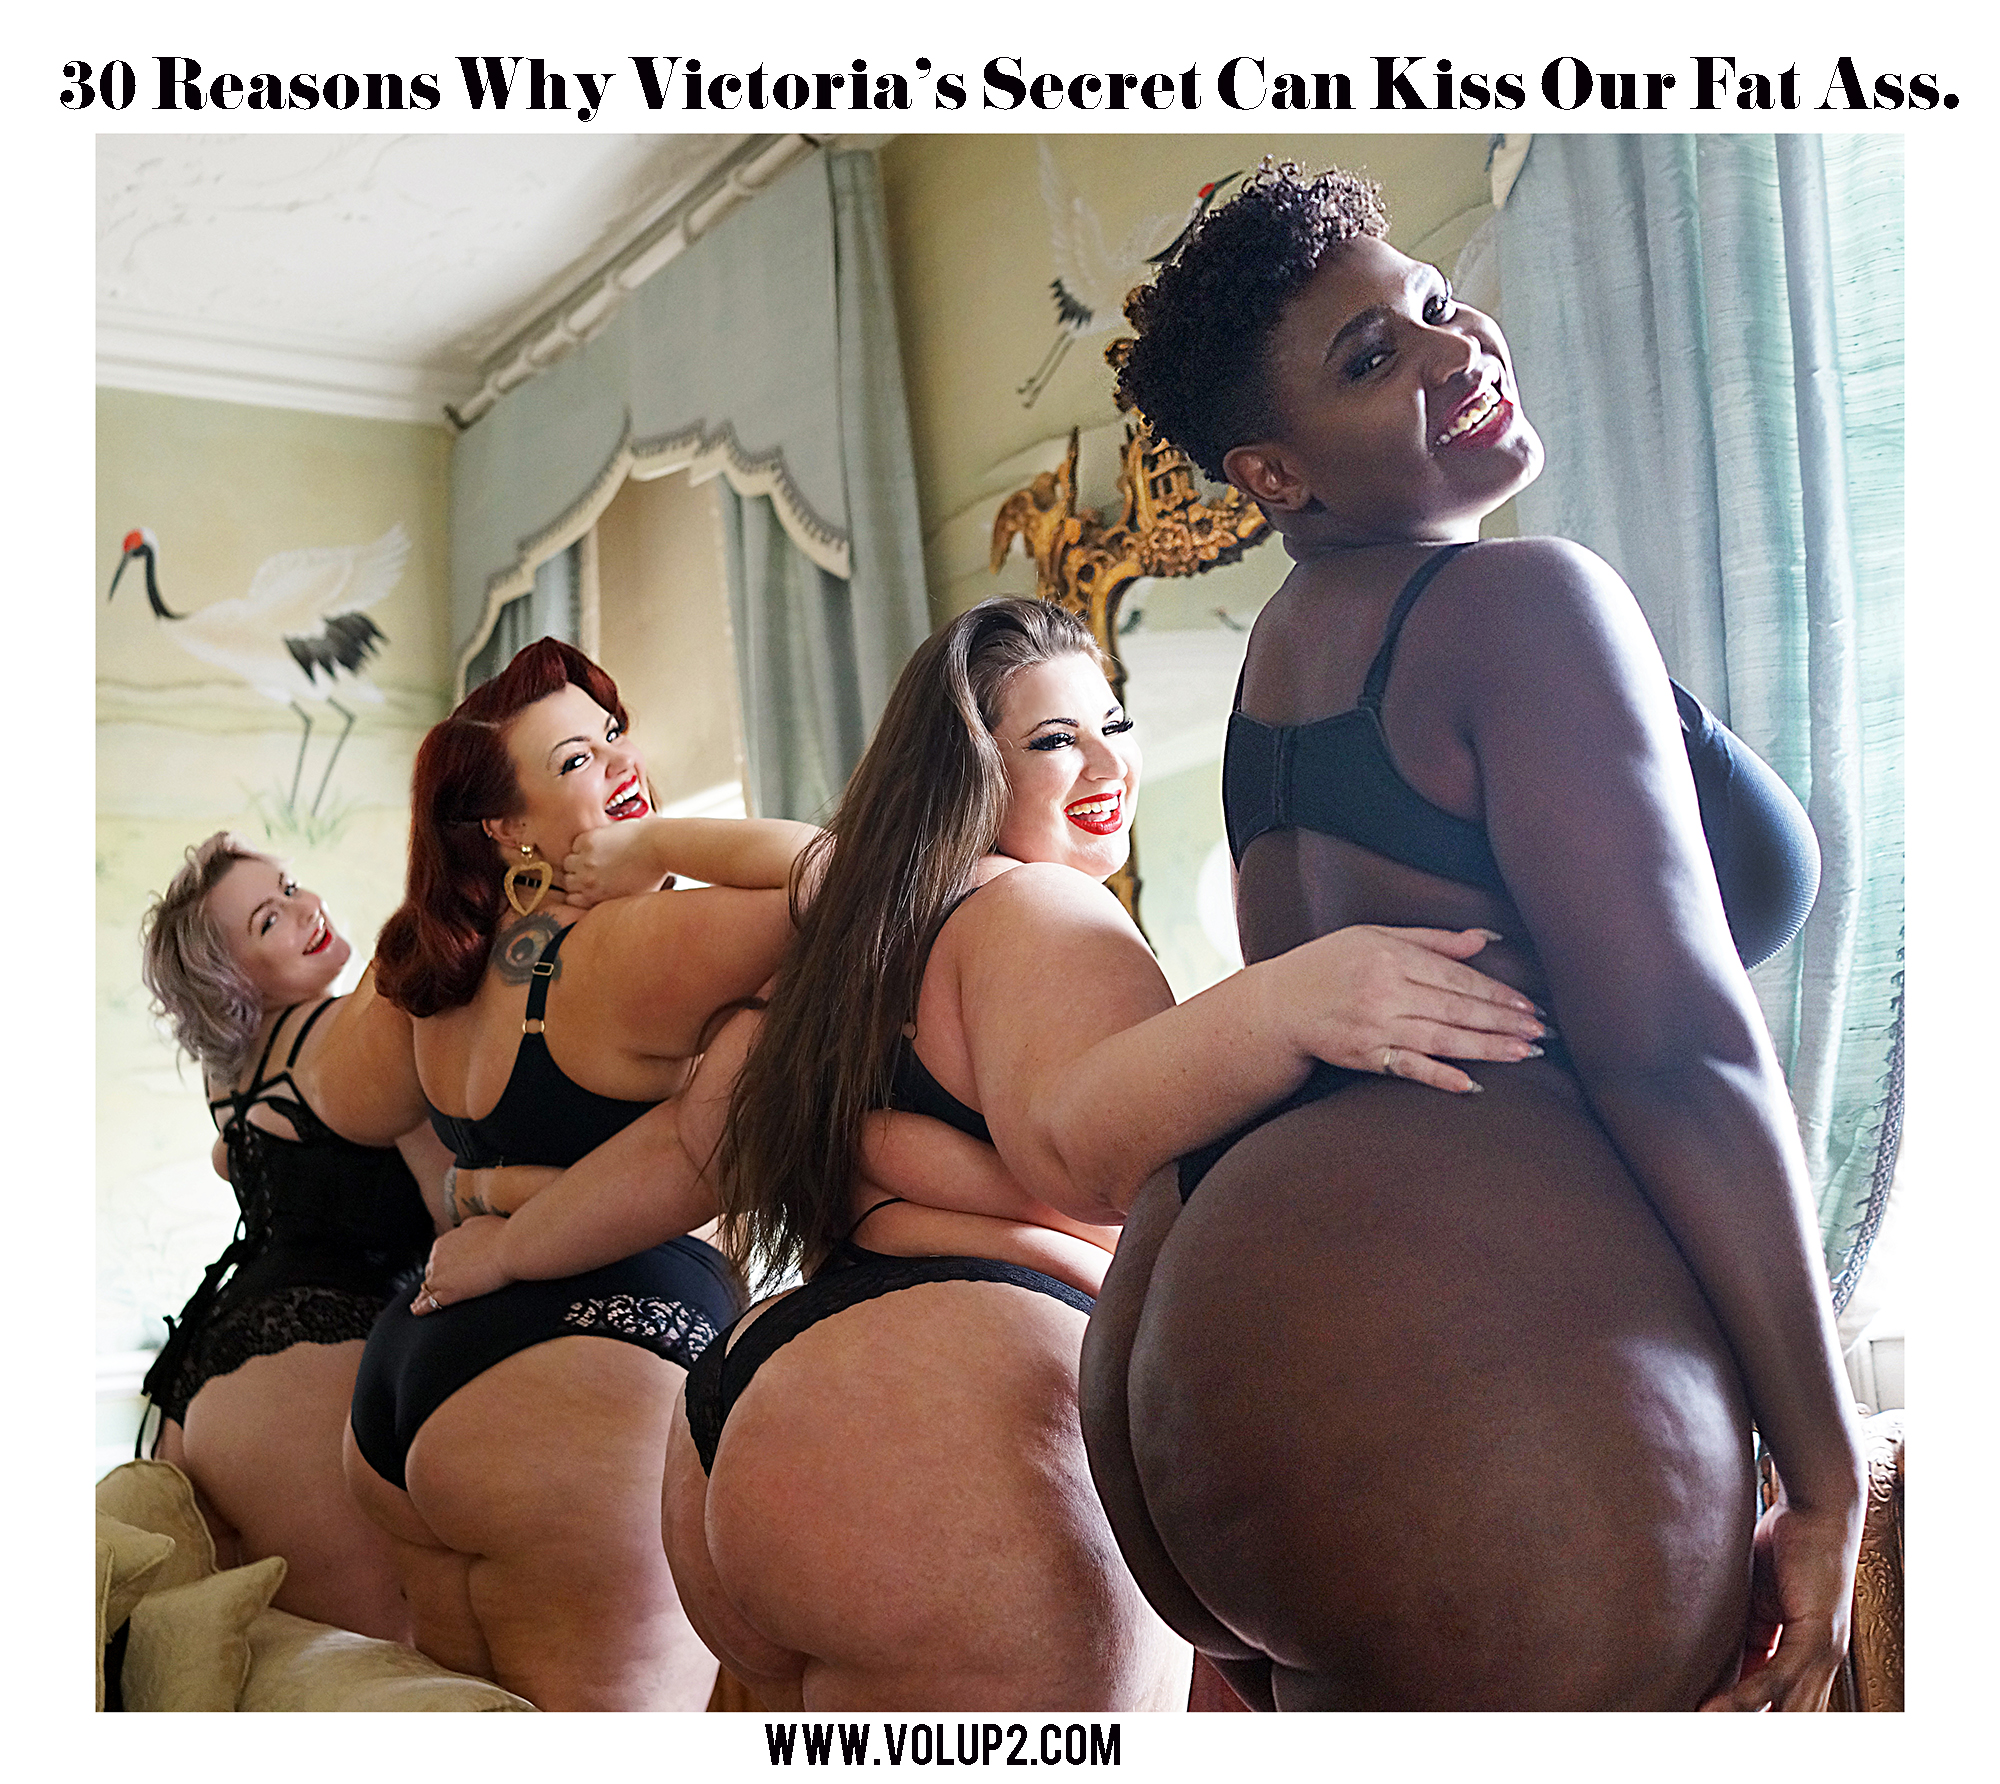 30 Reasons Victoria's Secret Can Kiss Our Fat Ass by Velvet d'Amour â€”  VOLâ€¢UPâ€¢2